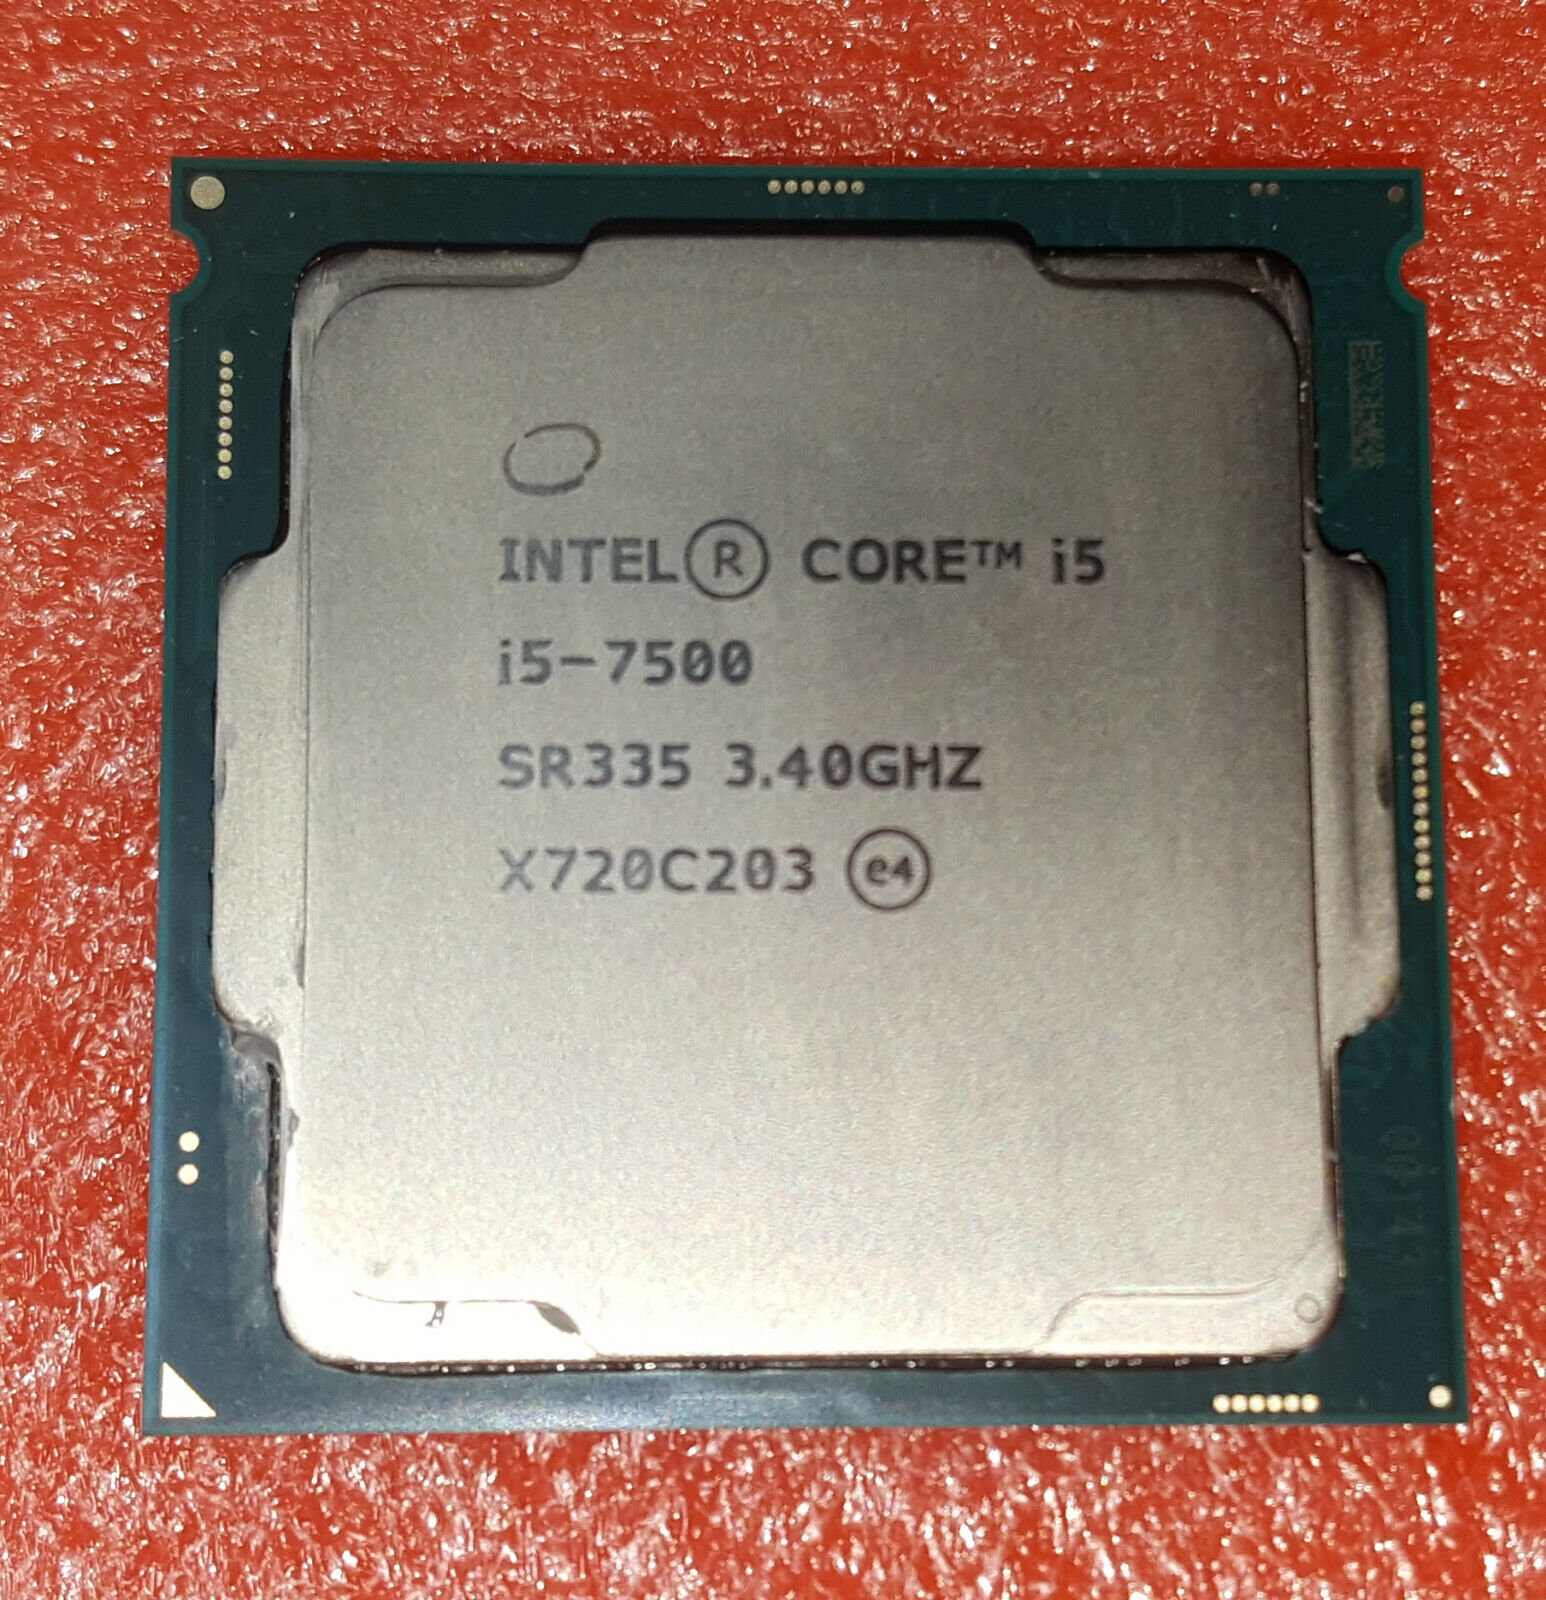 Intel Core i5-7500 SR335 3.4GHz Quad Core LGA 1151  Processor CPU TESTED PERFECT